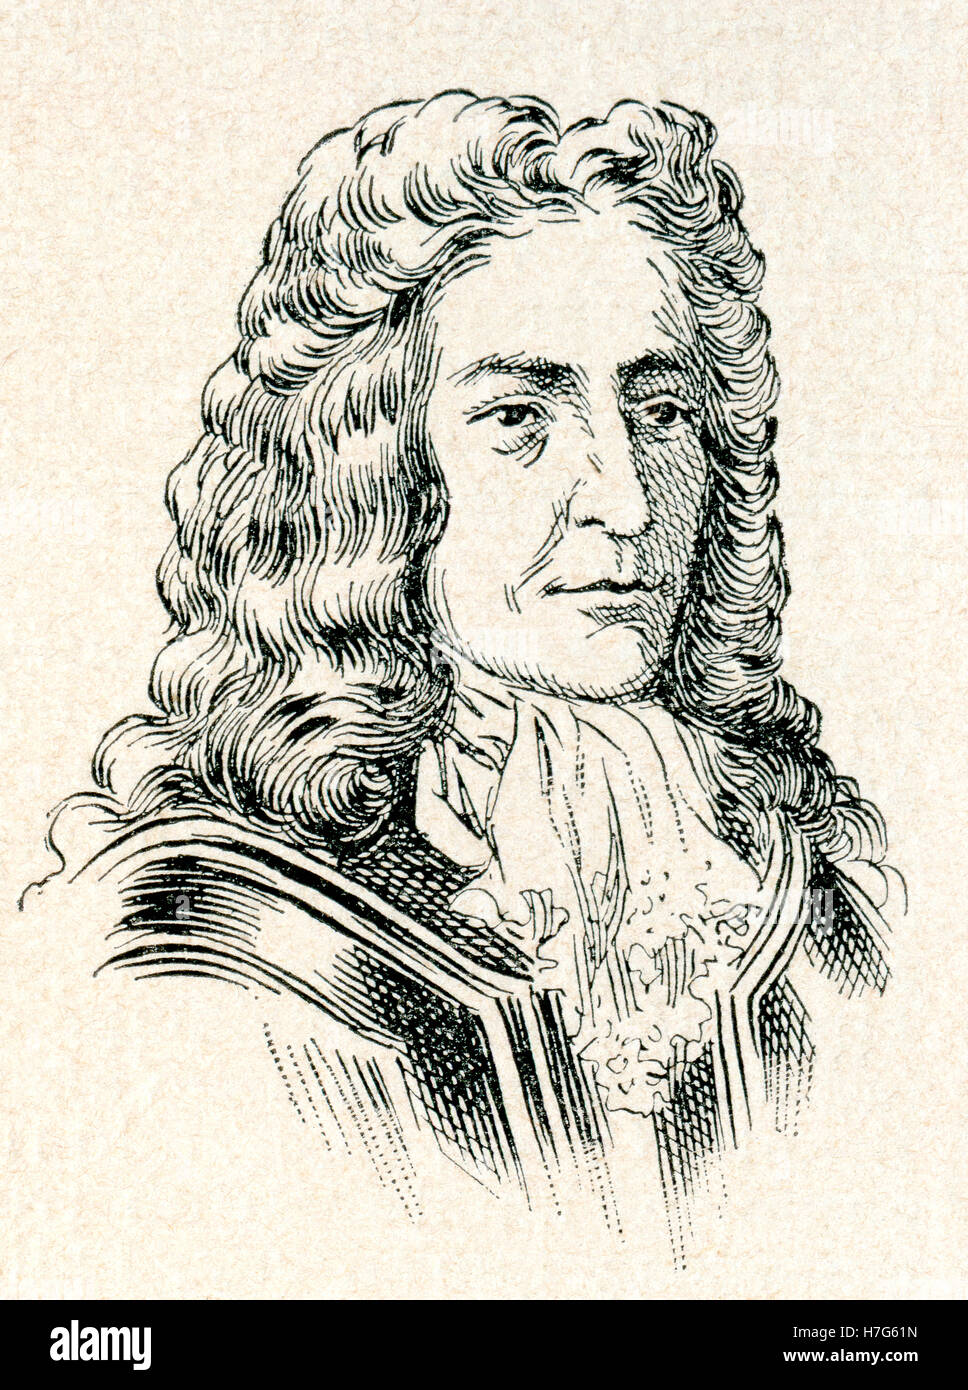 Le prince Eugène de Savoie, 1663 - 1736. Le commandant militaire, le général de l'Armée impériale et homme d'état du Saint Empire Romain et le Archduchy d'Autriche. Banque D'Images